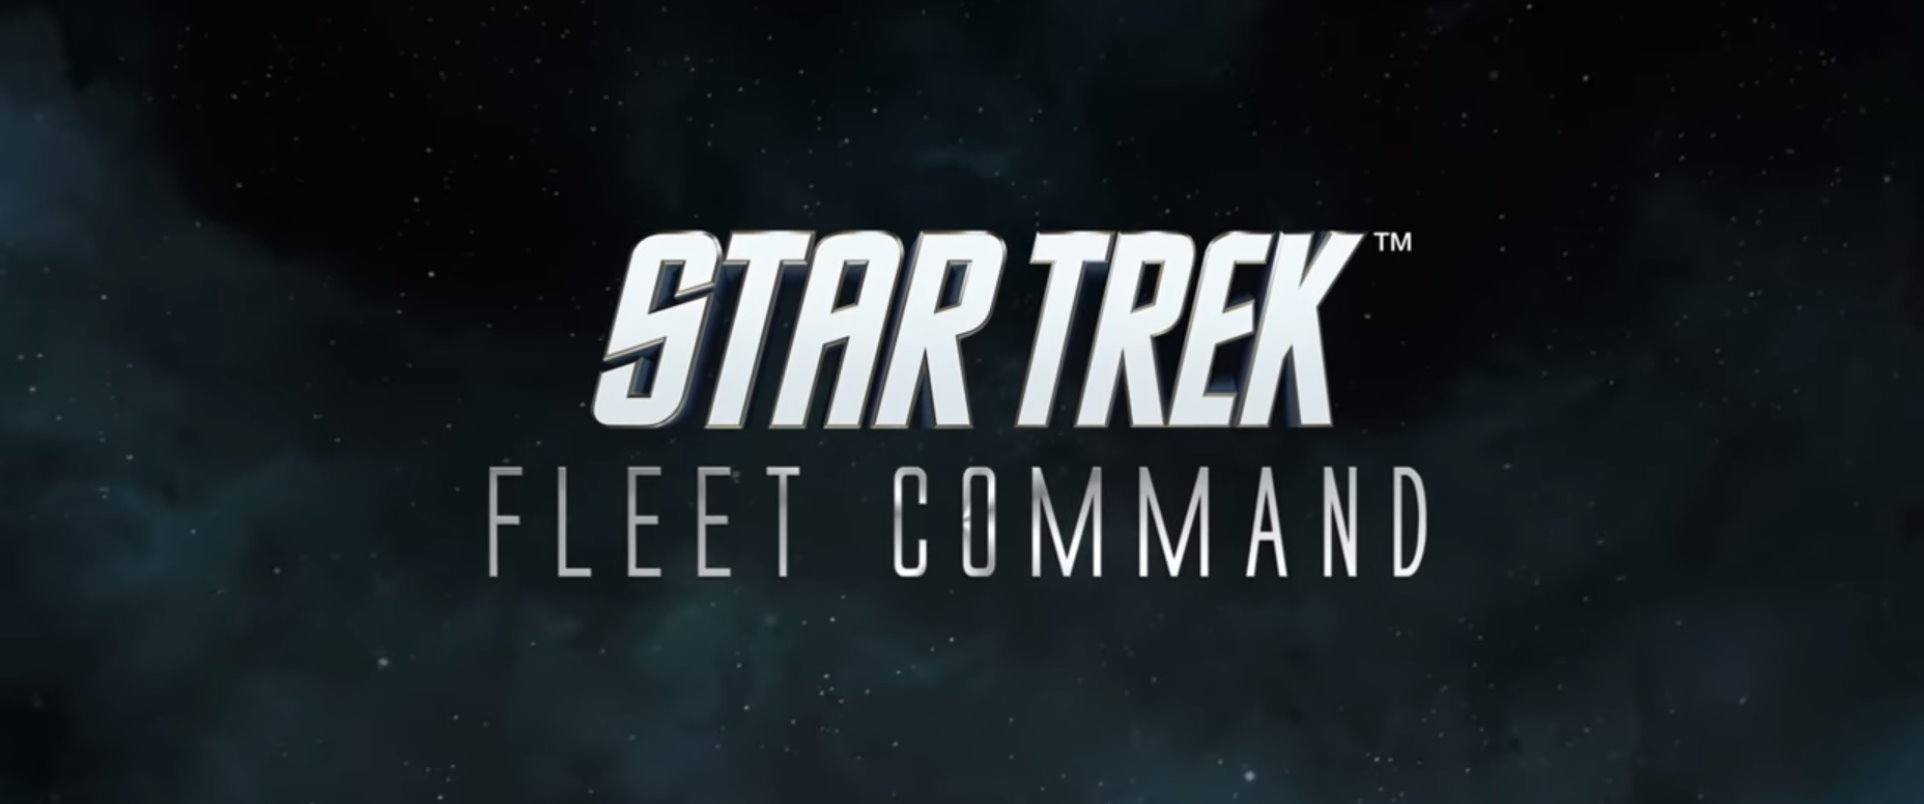 star trek fleet command database